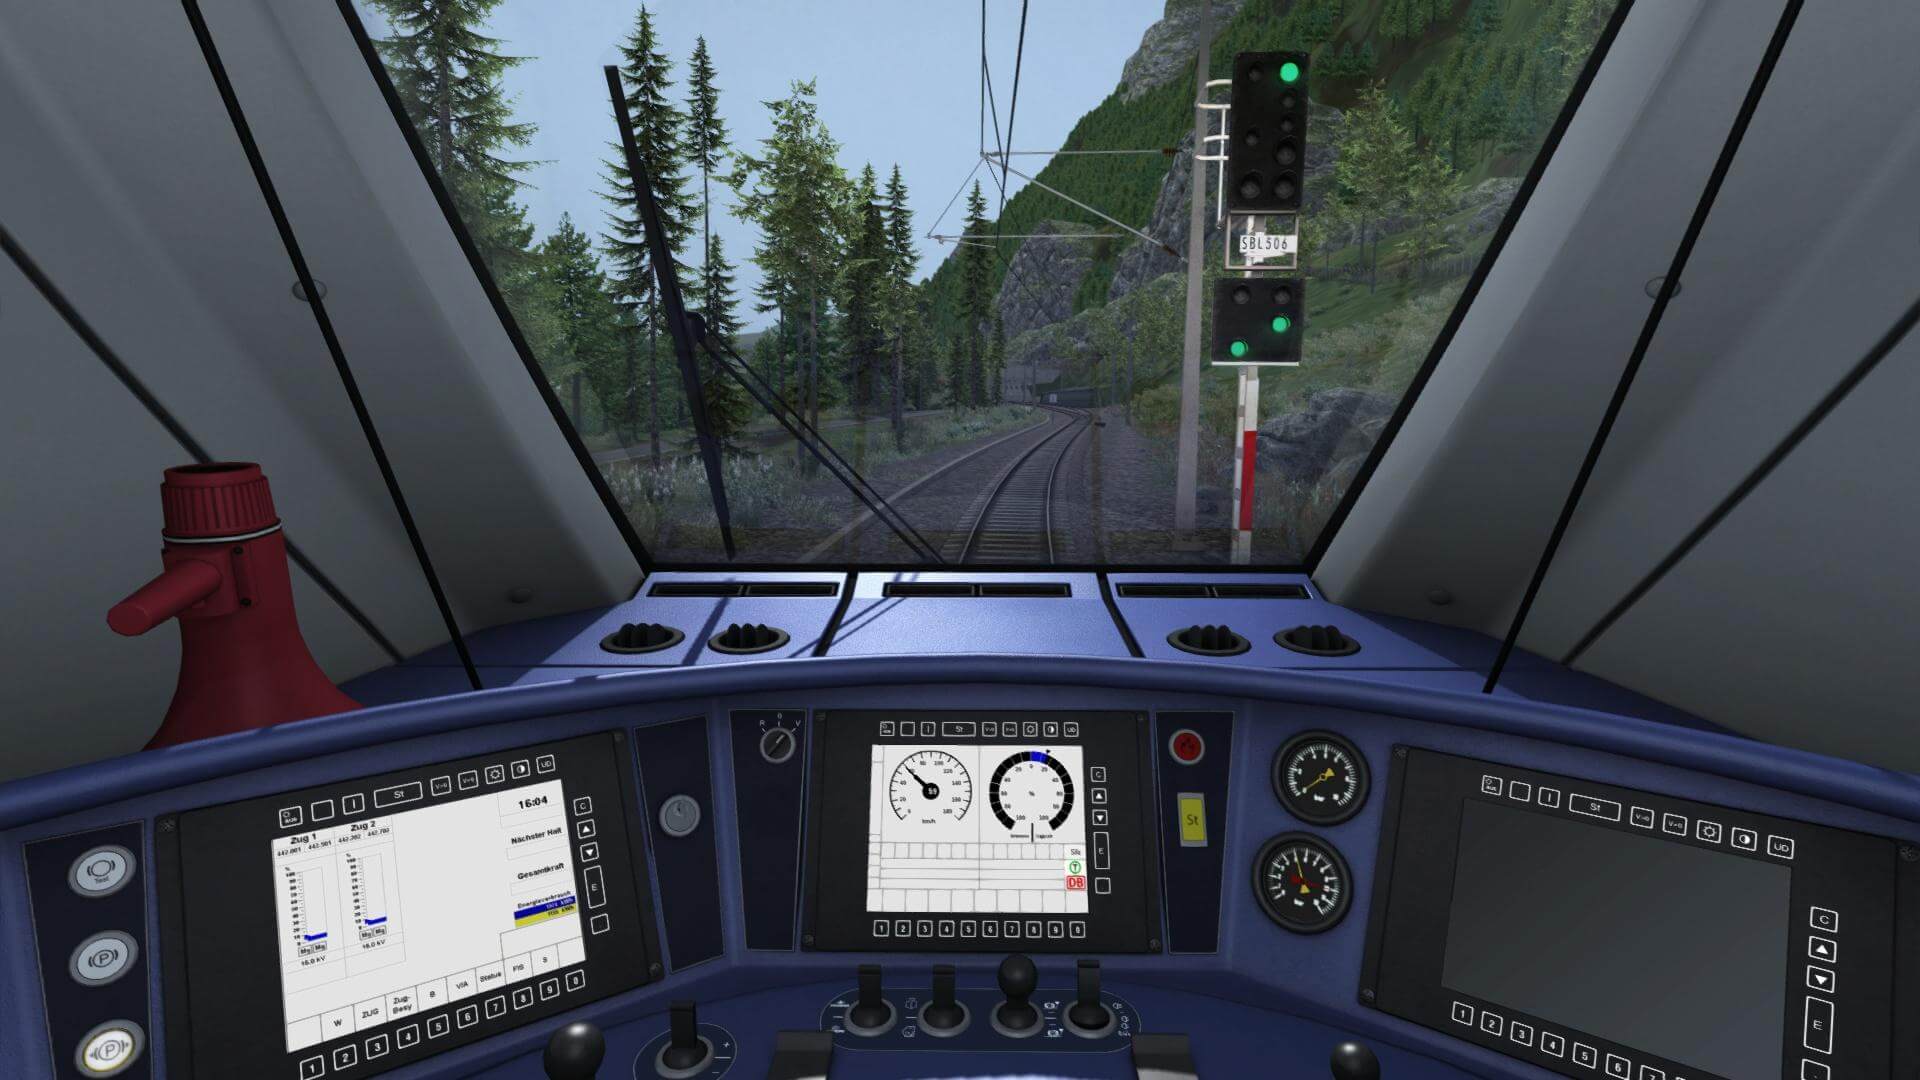 microsoft train simulator 2020 free download for pc